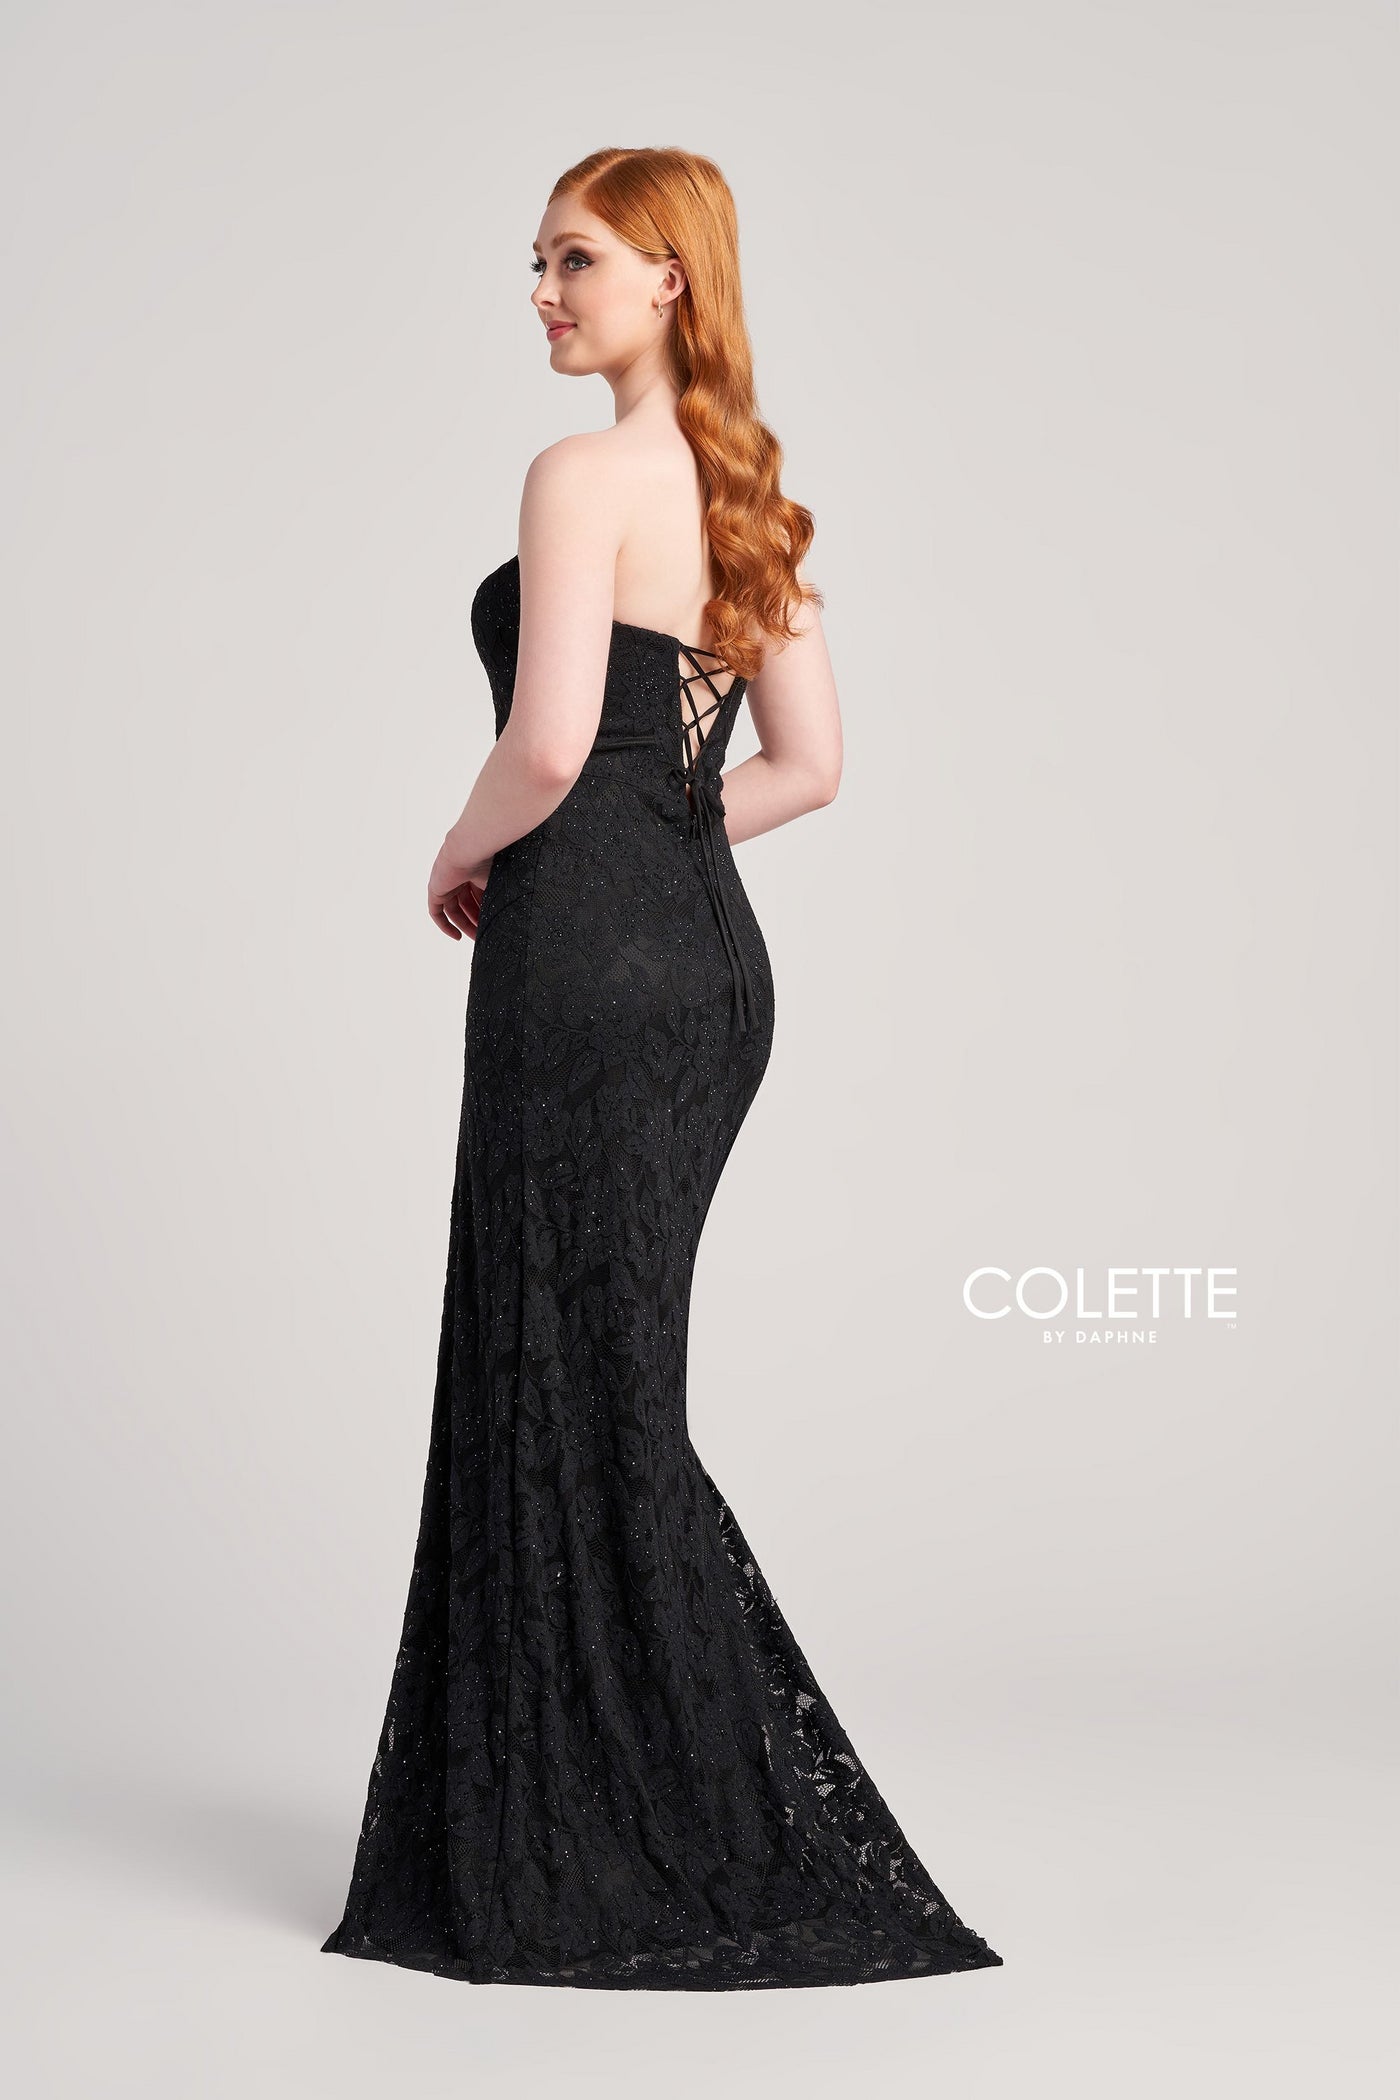 Colette CL5266